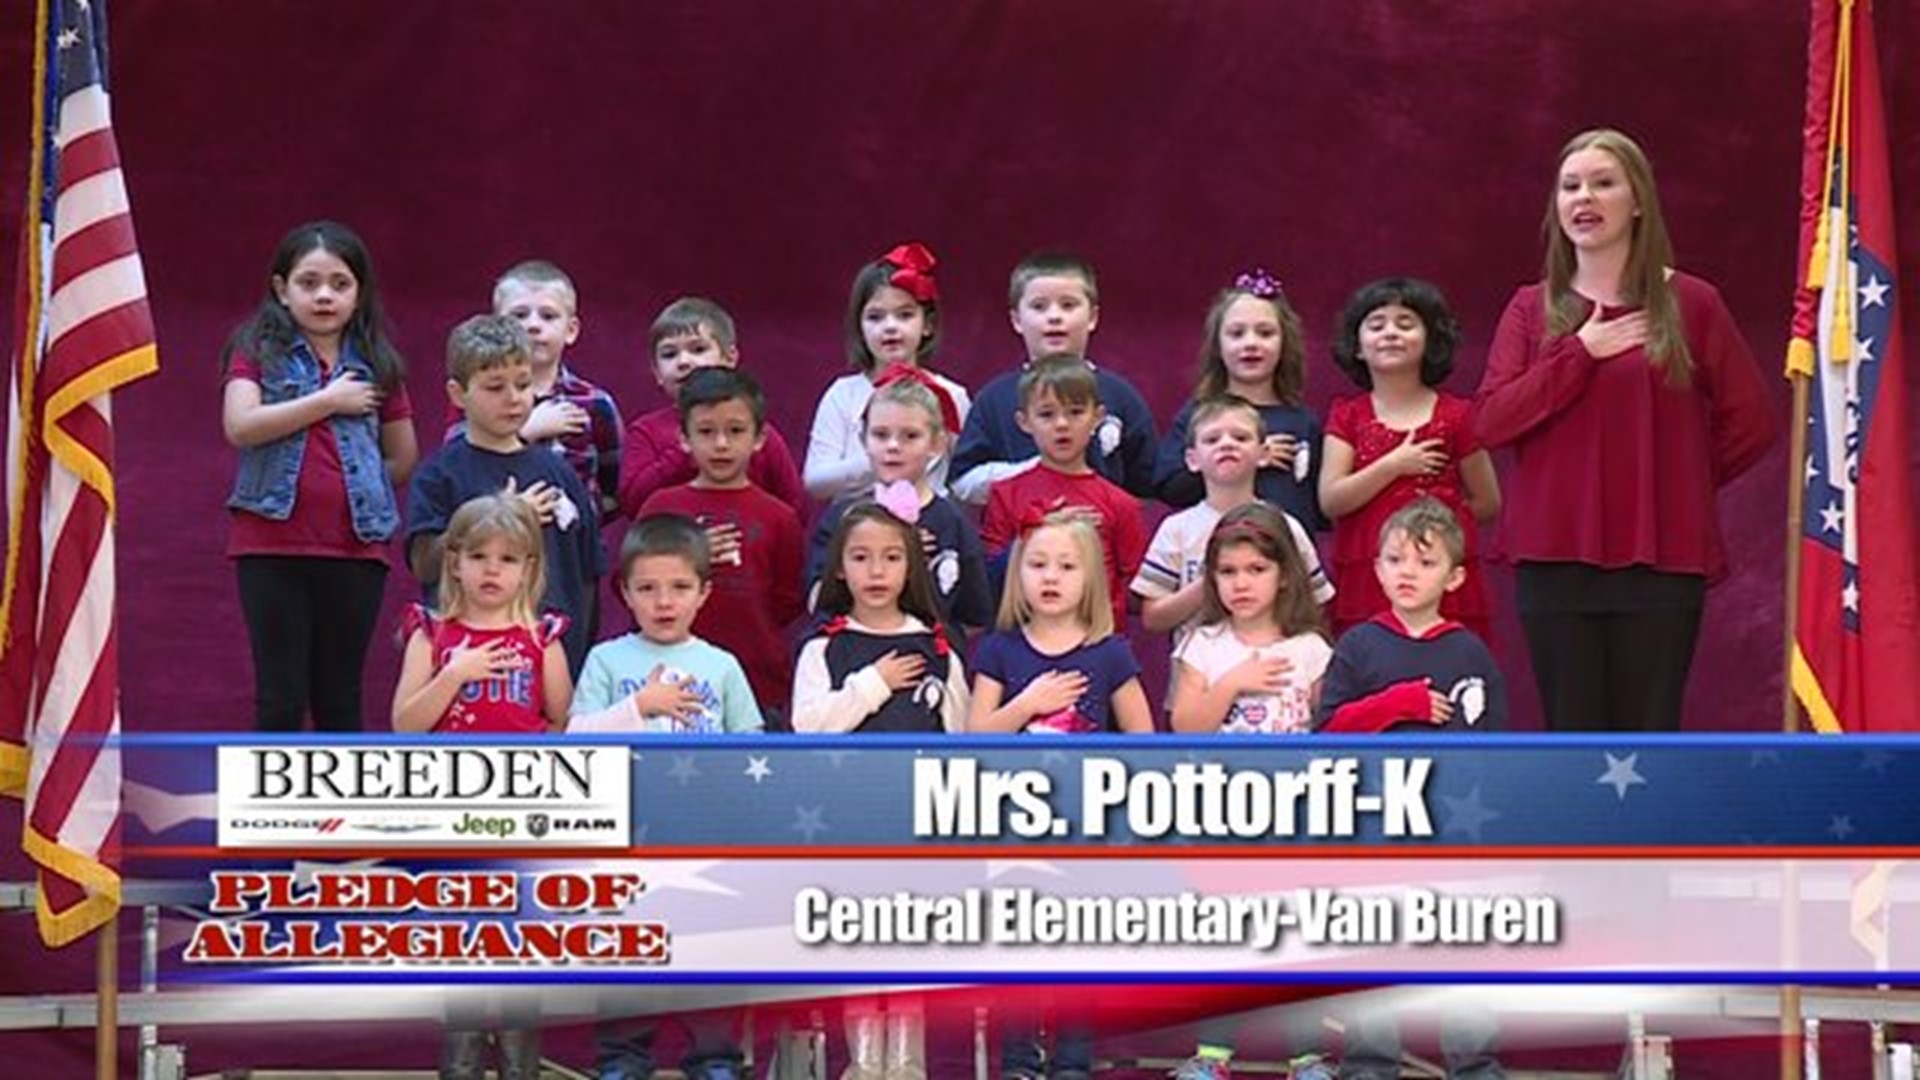 Central Elementary - Van Buren, Mrs. Pottorff - Kindergarten